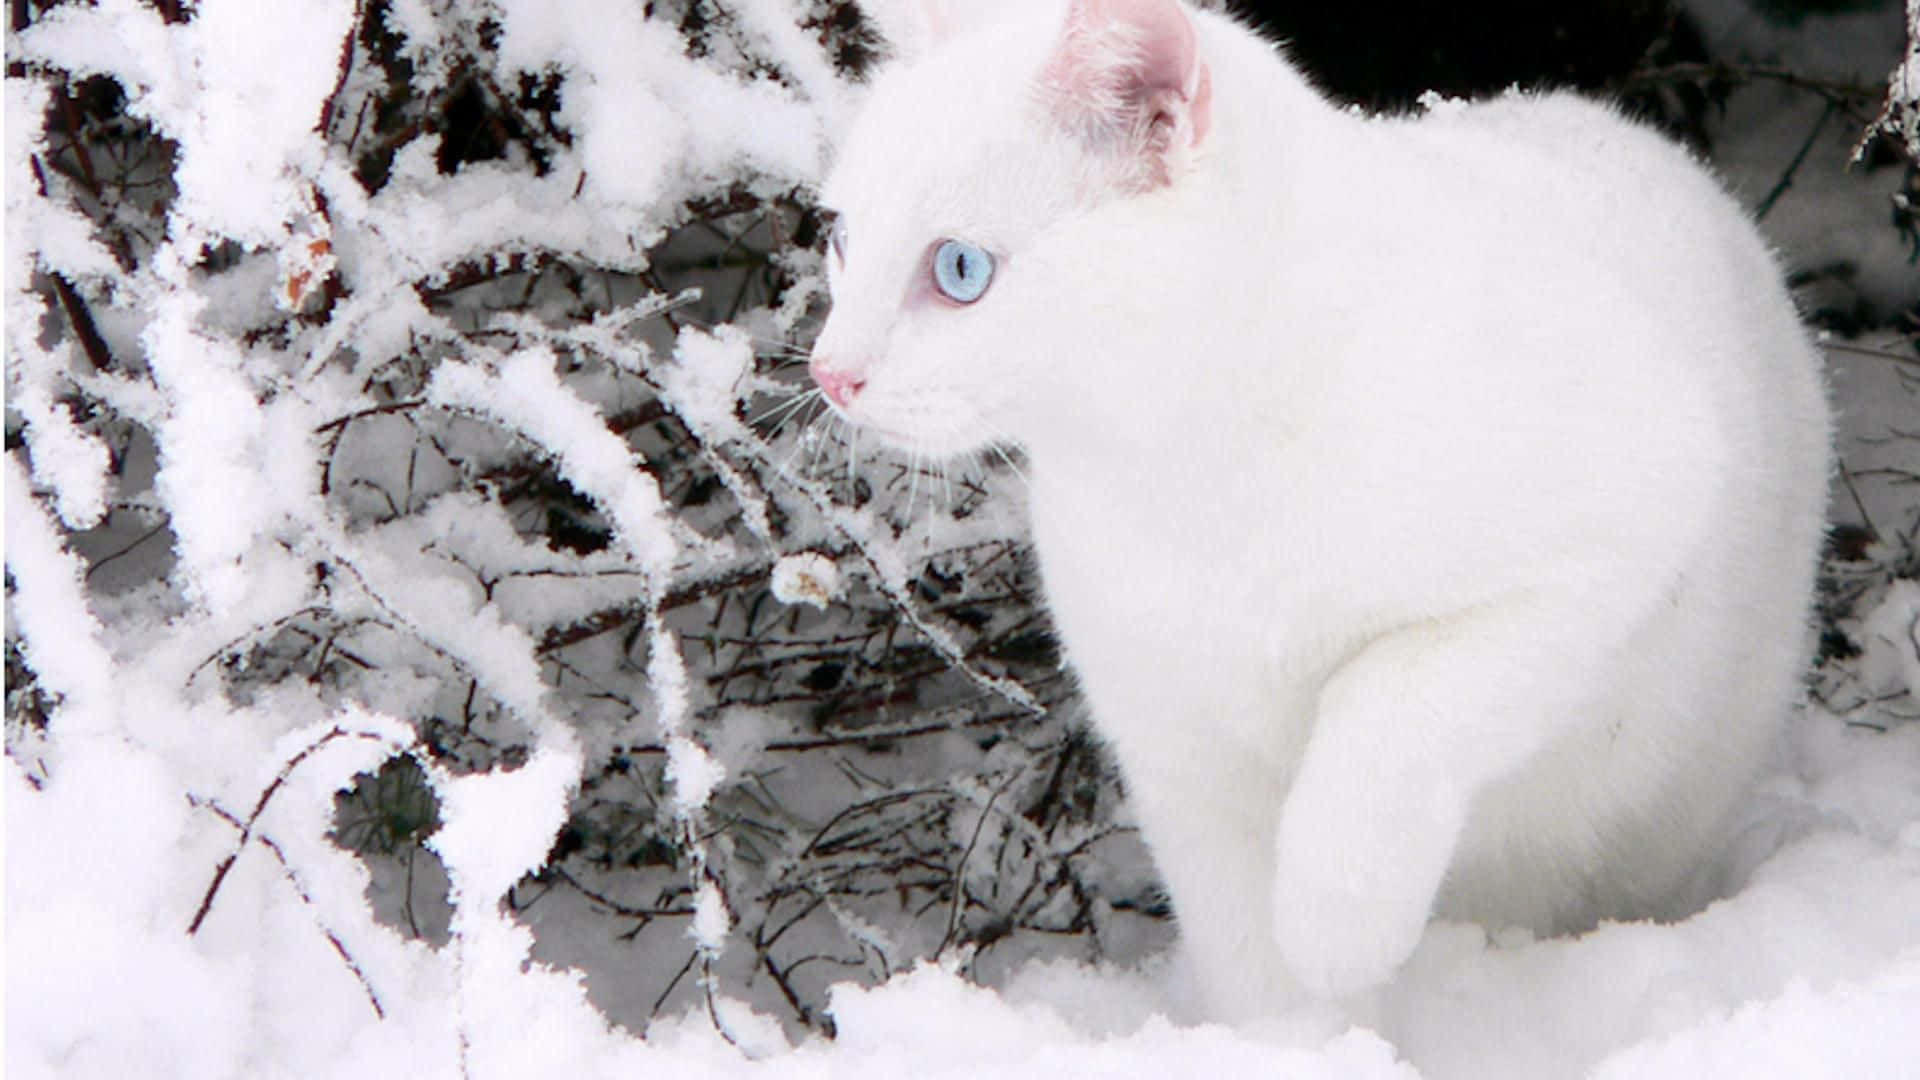 Imagende Un Gato Blanco Durante El Invierno.